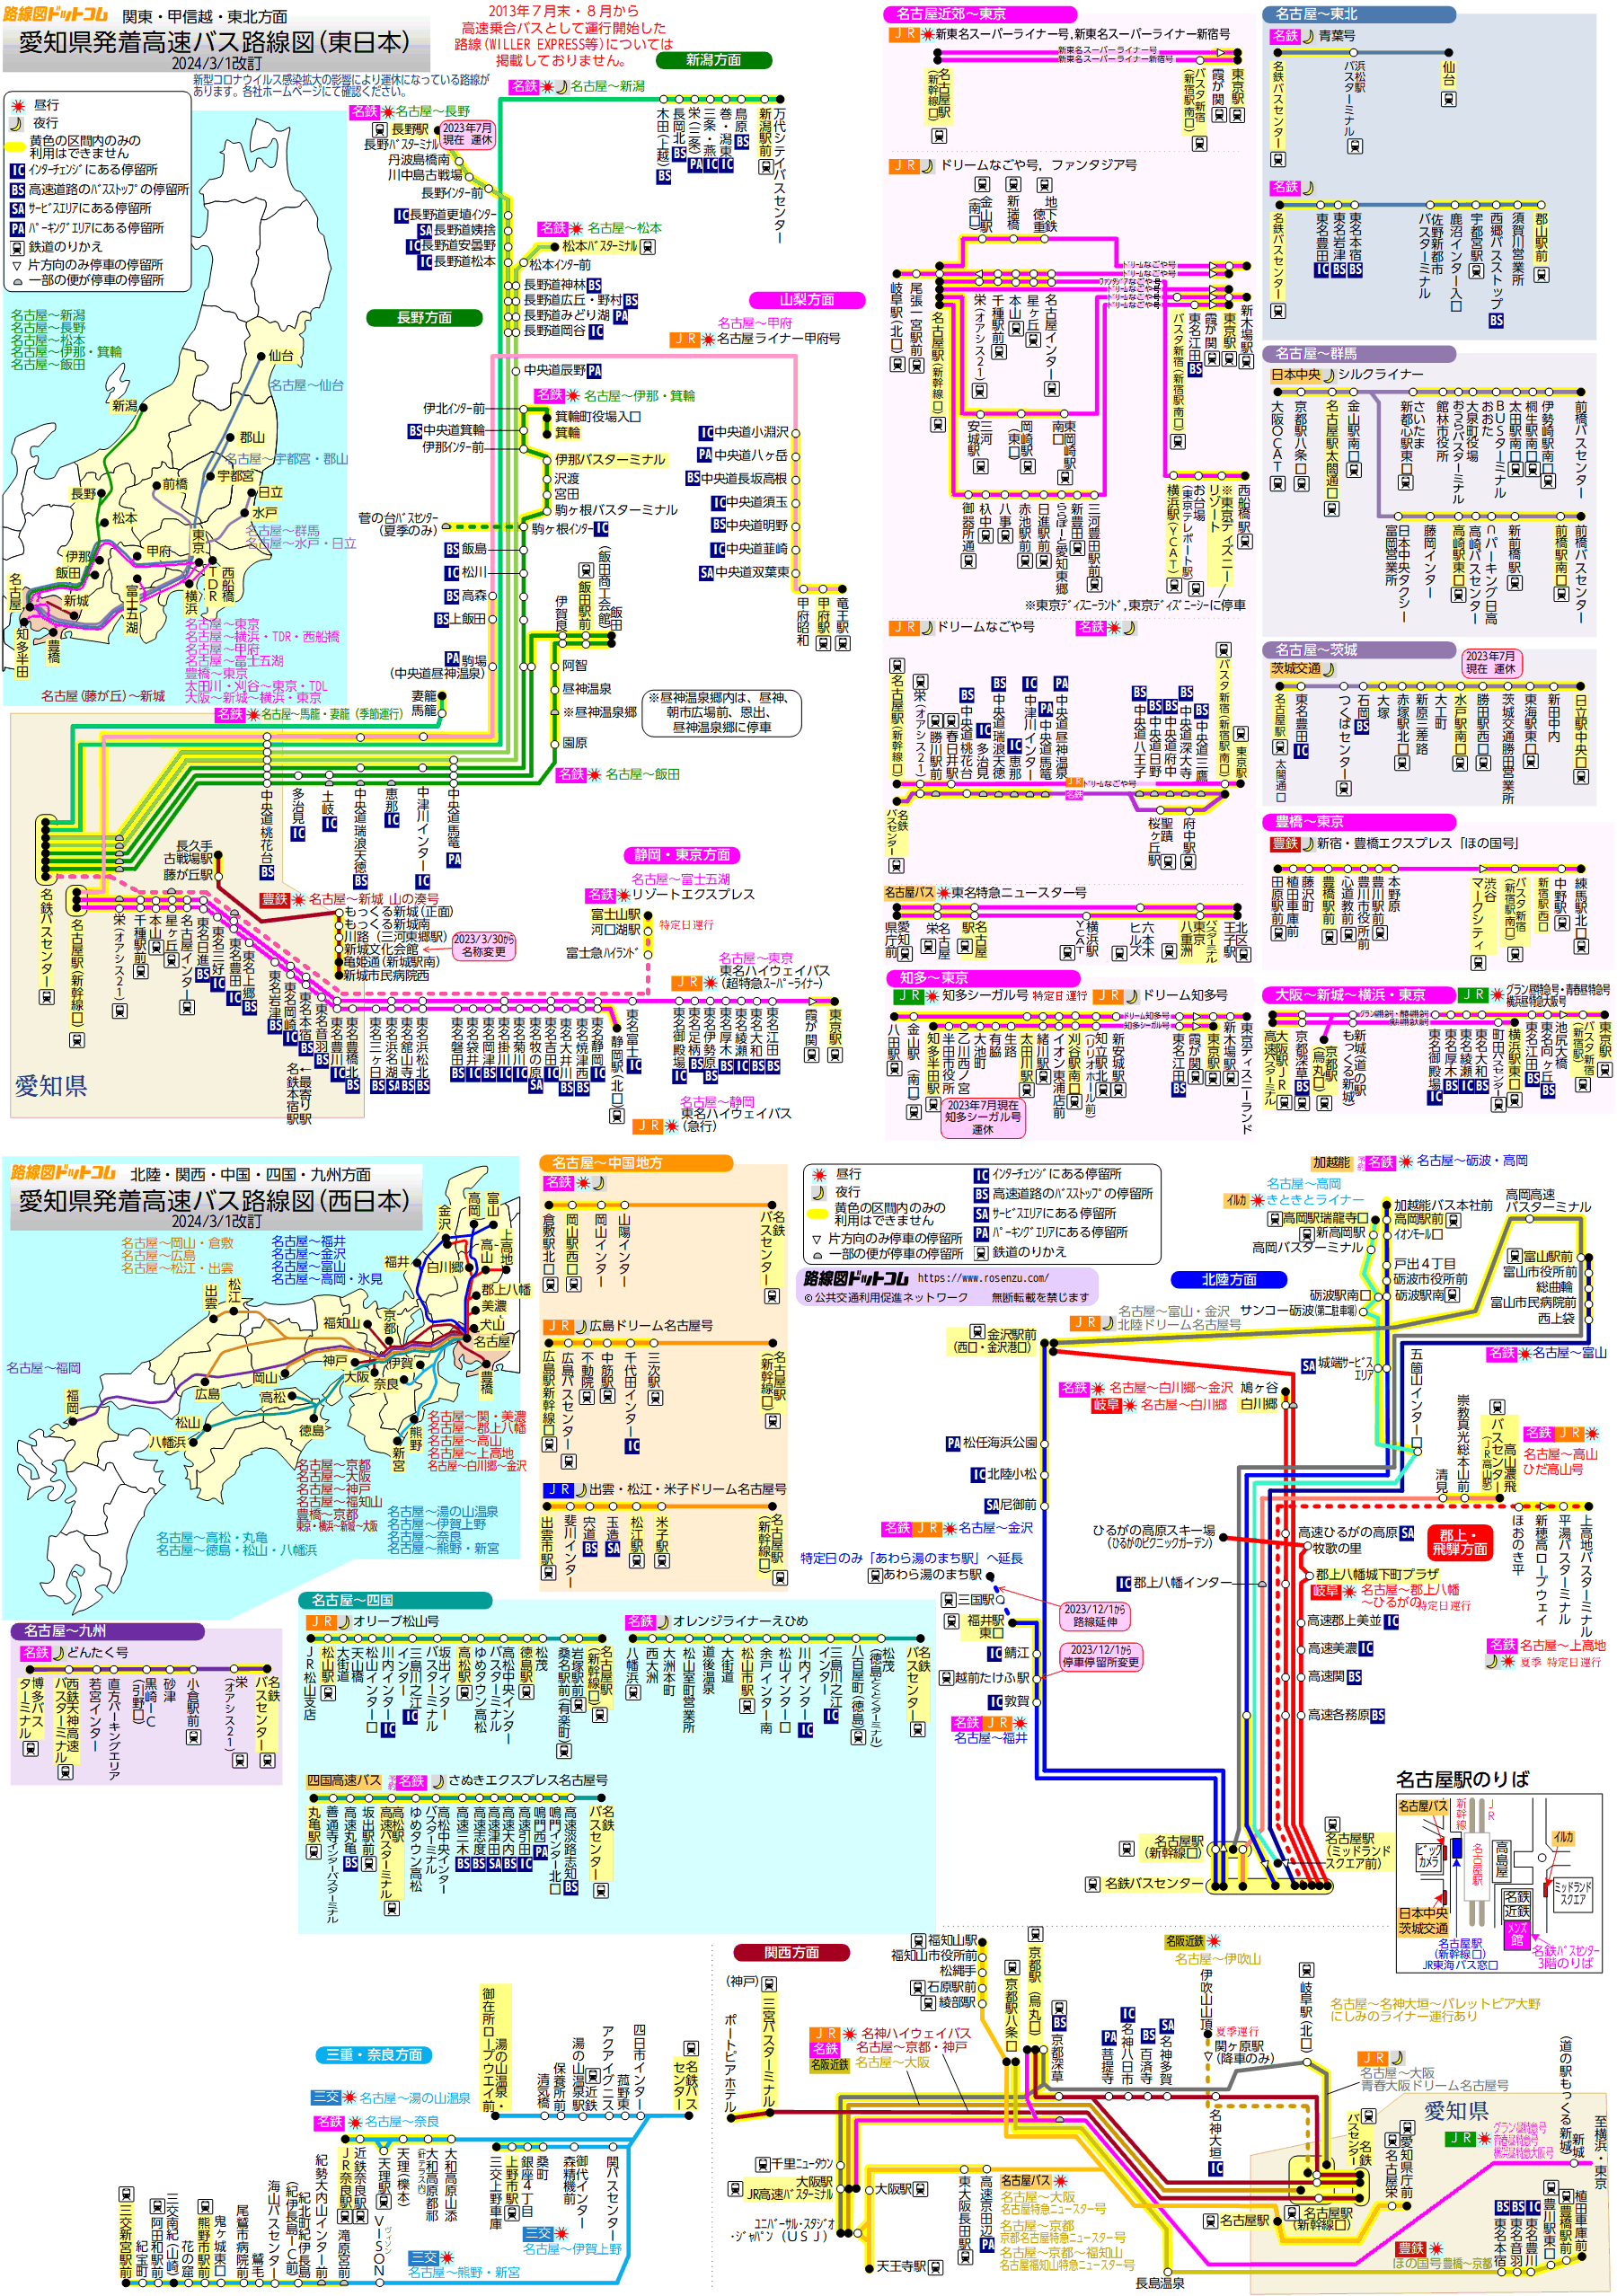 愛知県発着高速バス路線図